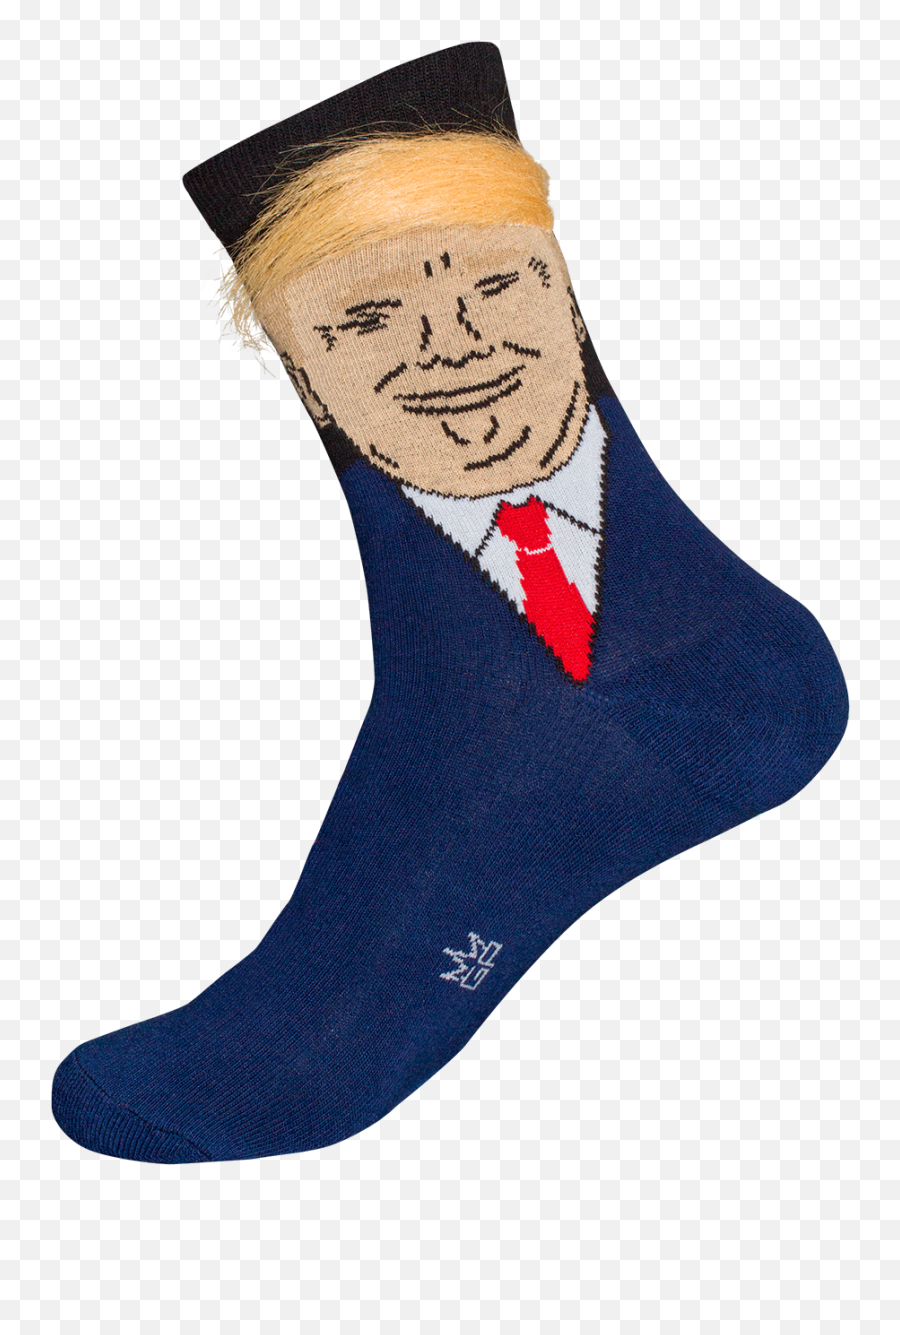 Donald Trump Hair Crew - Trump Socks With Hair Png,Donald Trump Hair Png